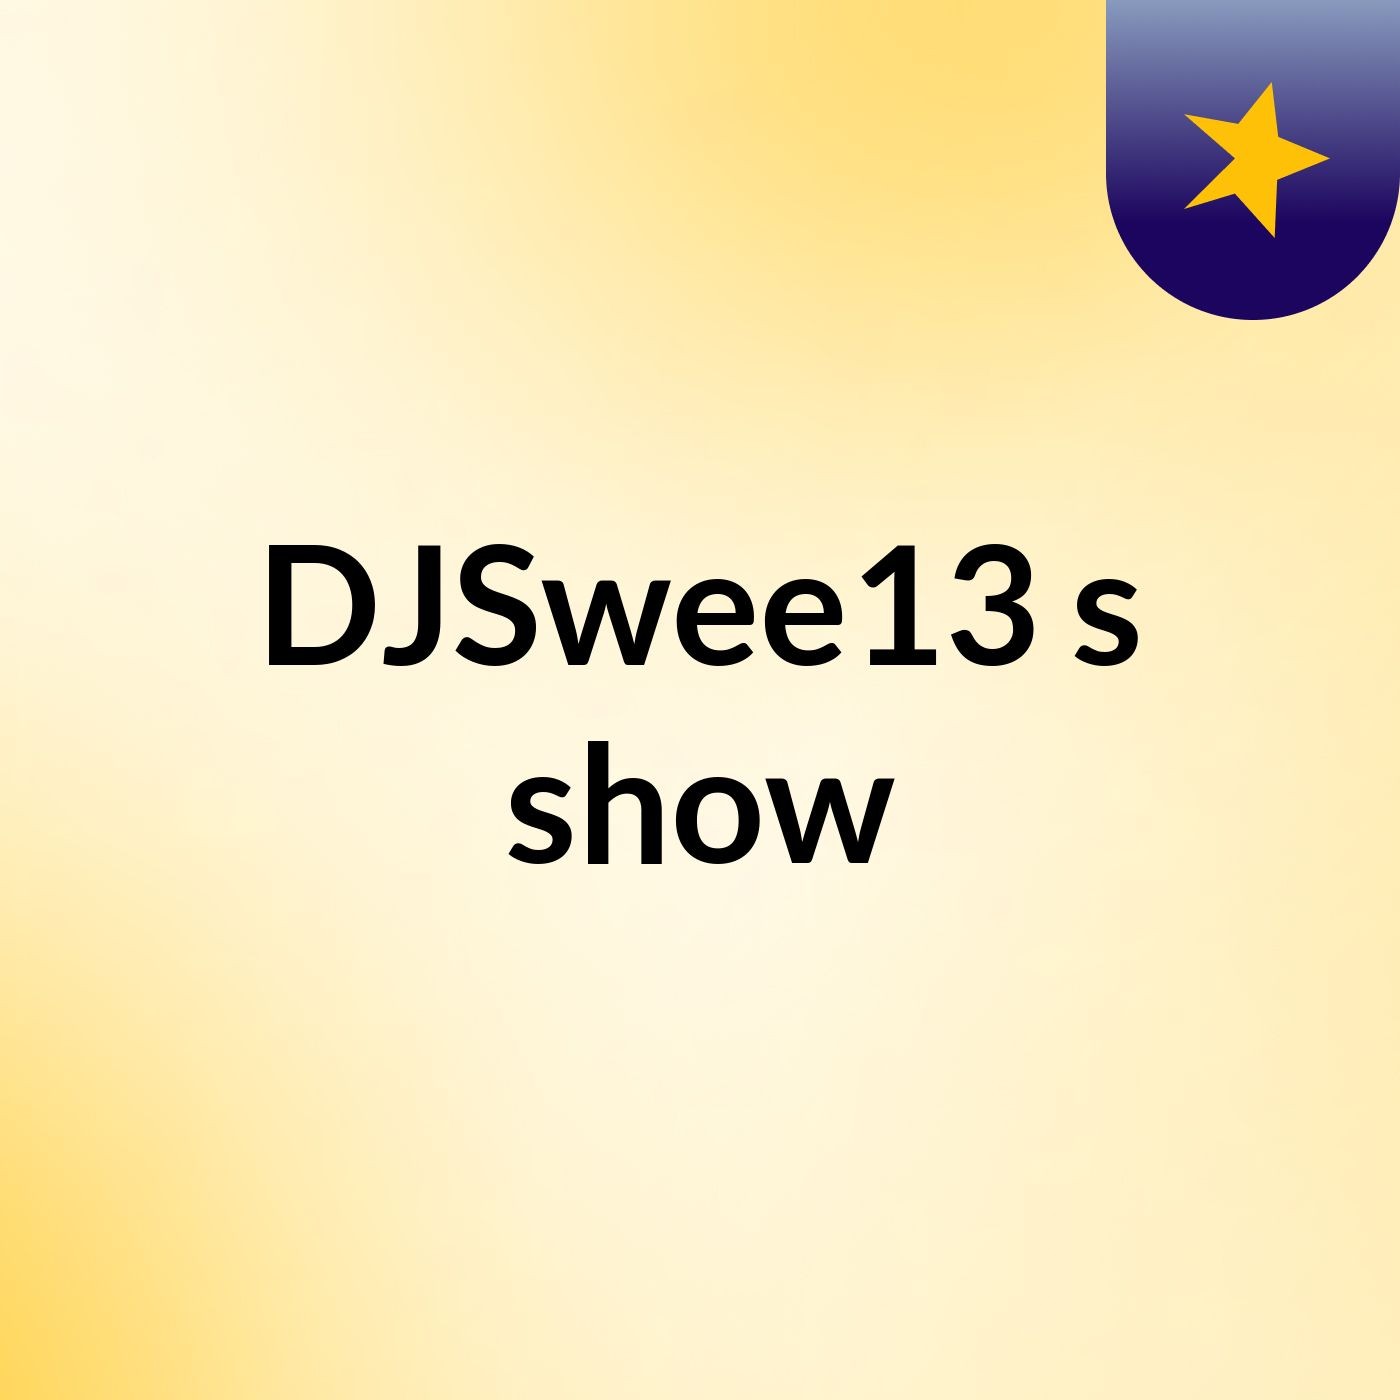 DJSwee13's show